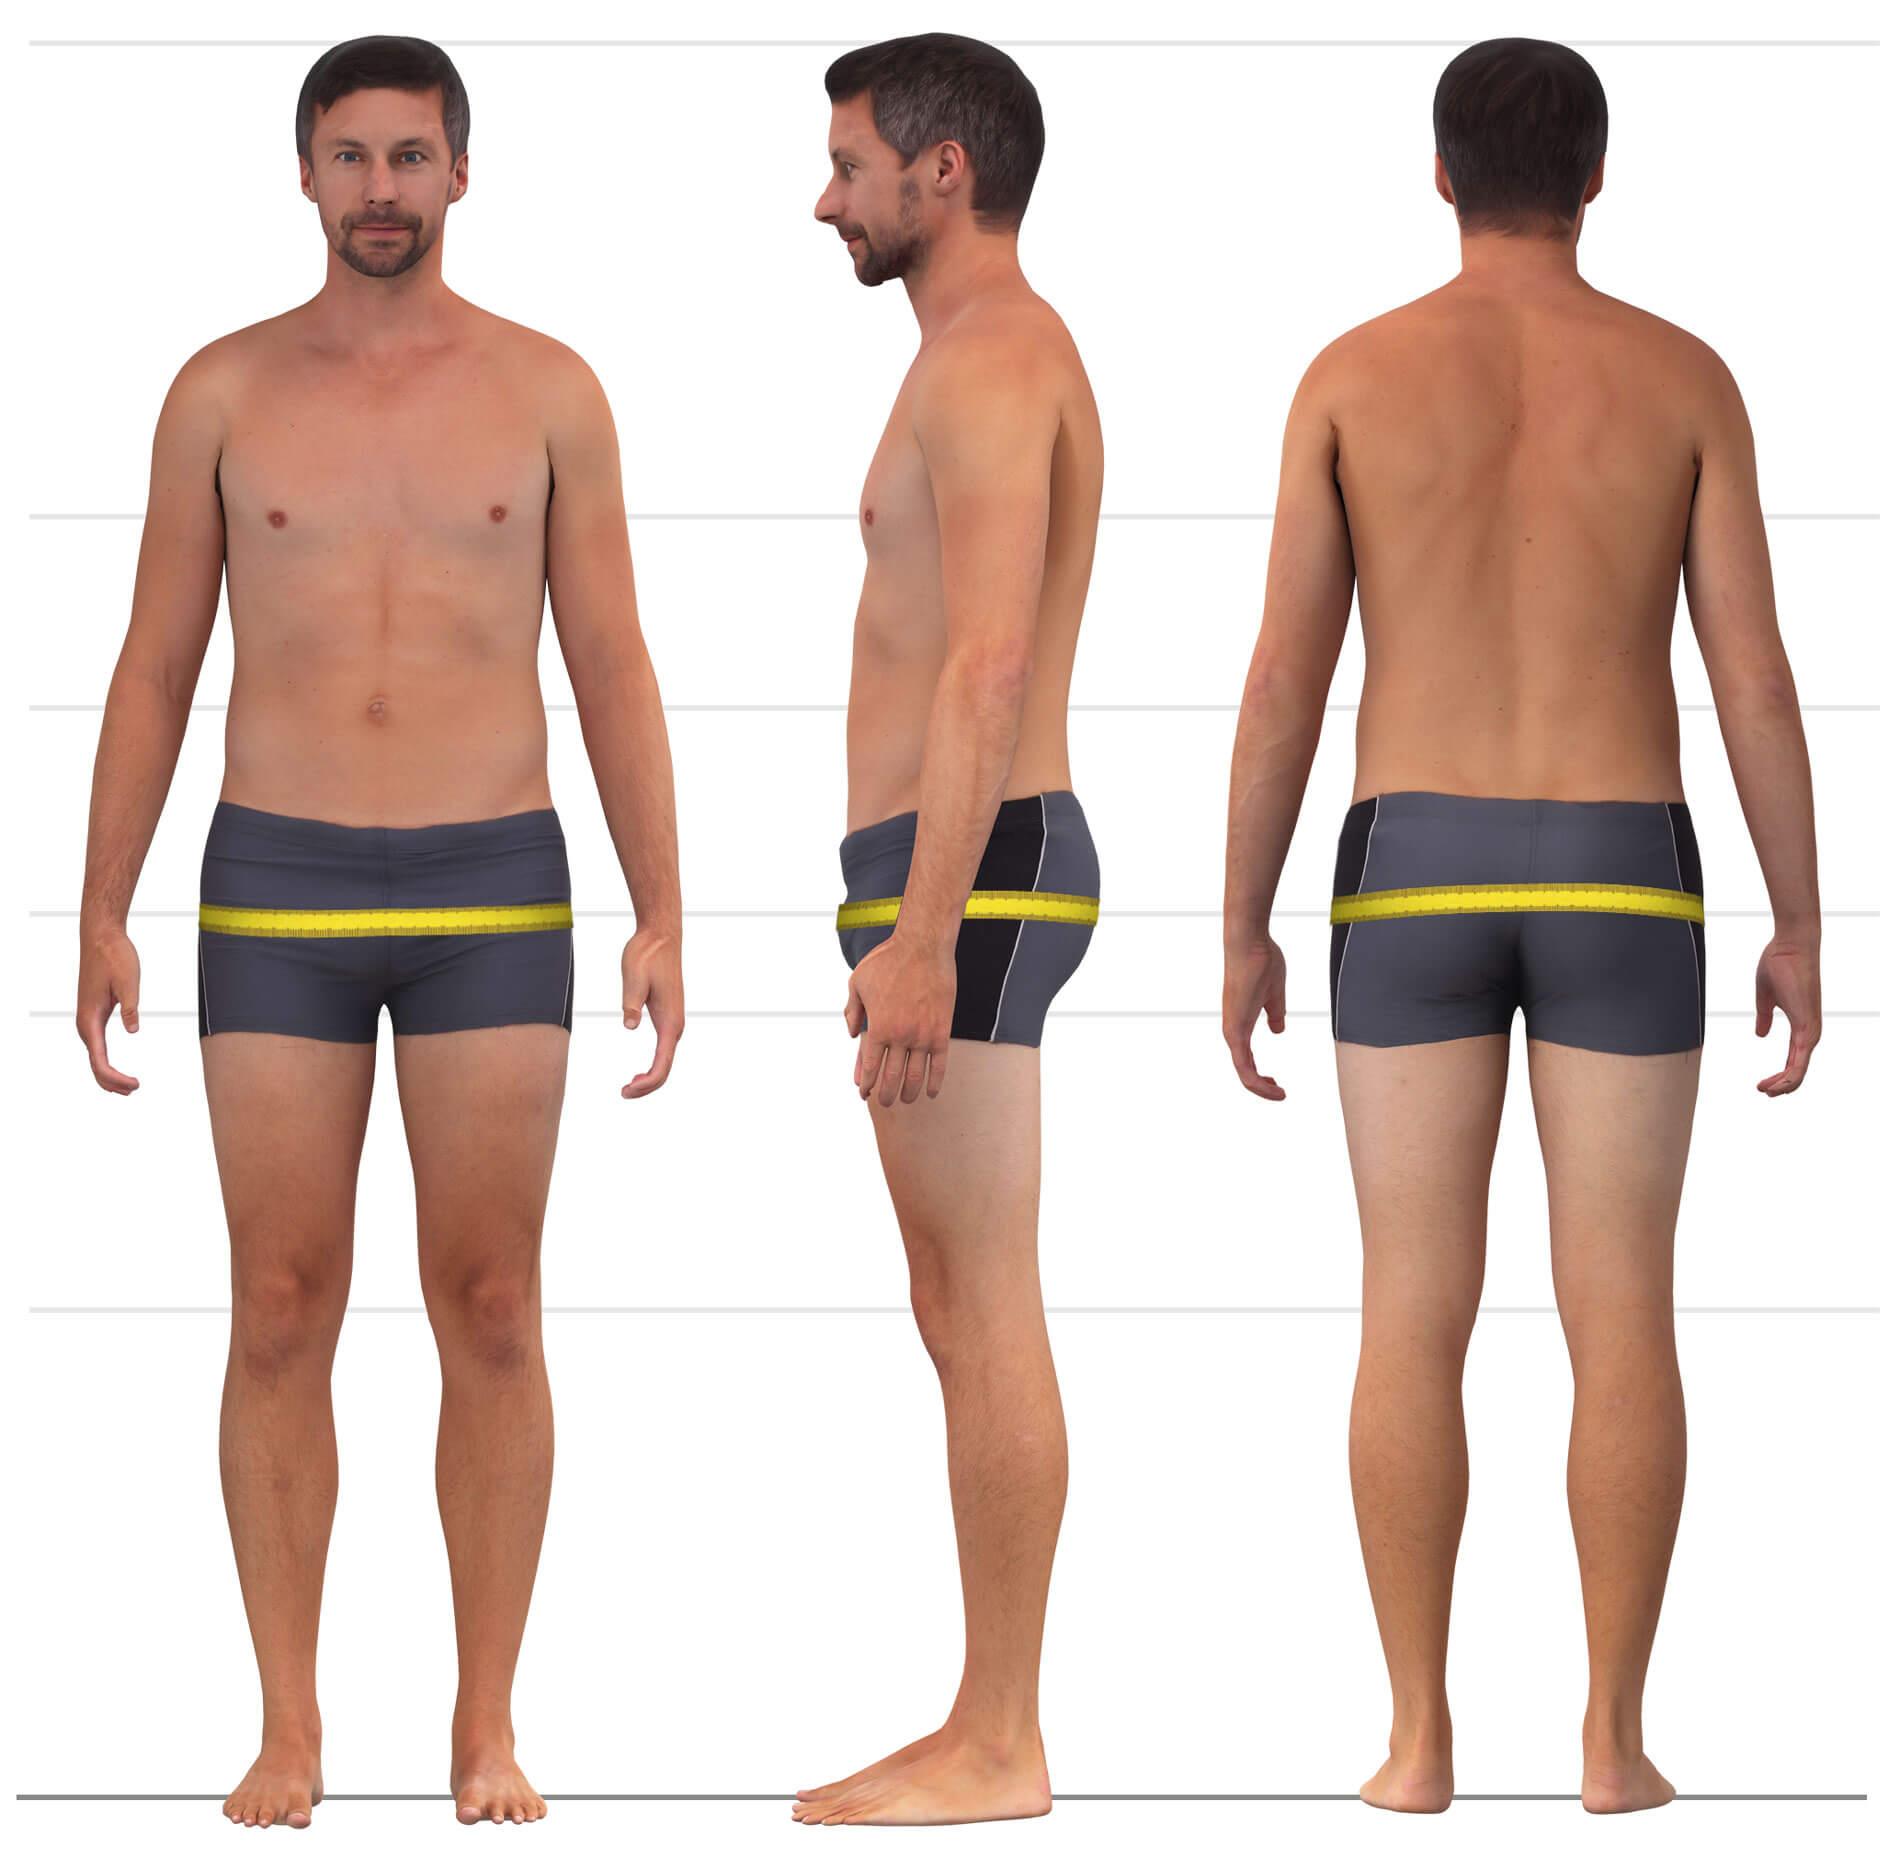 Das Bild zeigt das Maßnehmen des Gesäßumfangs für Männerhosen.